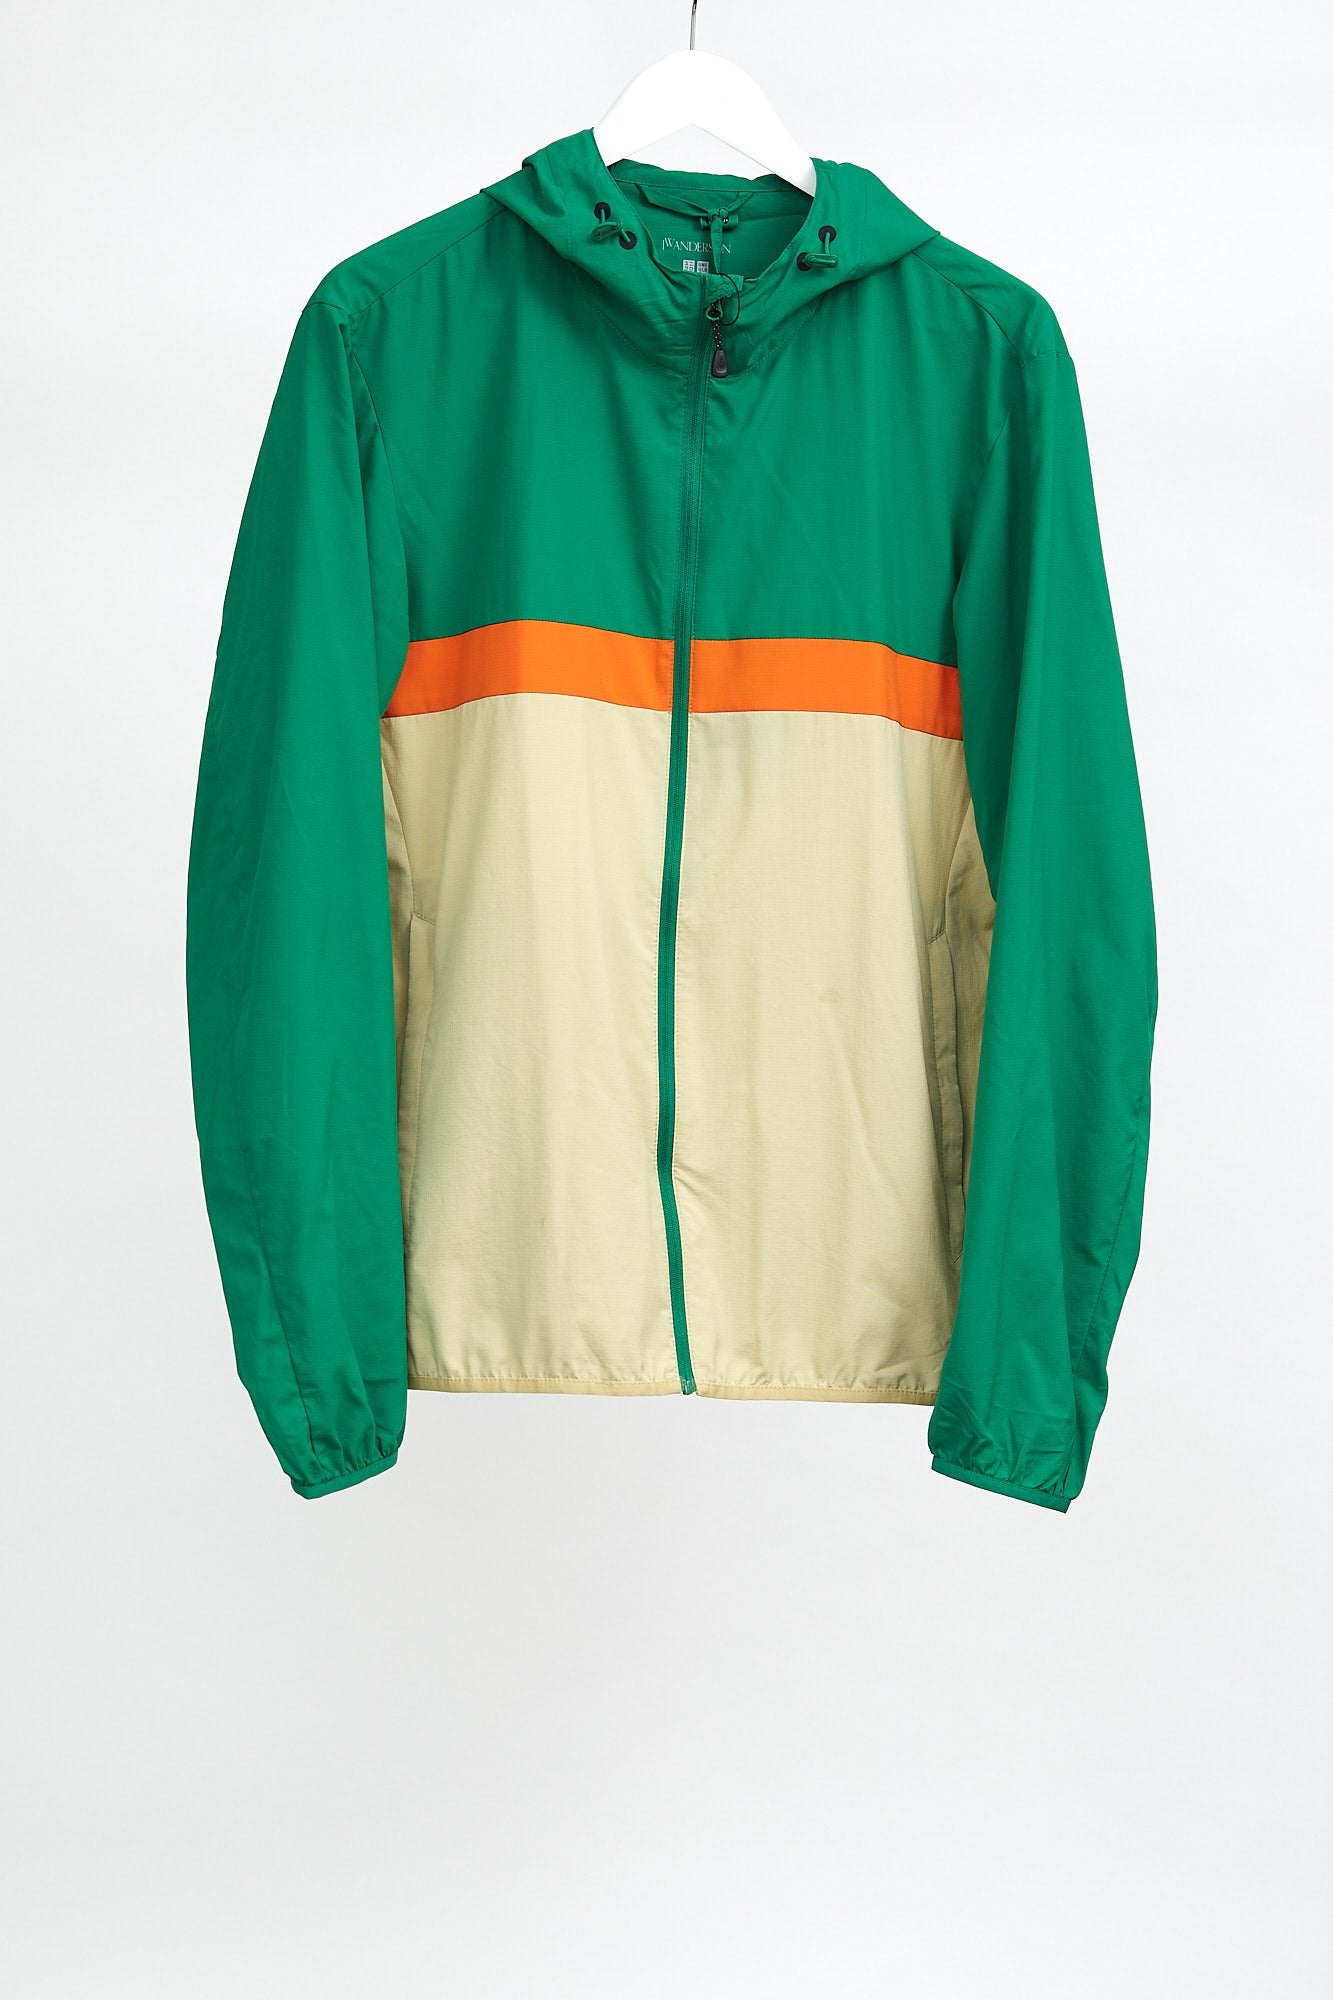 Mens Green, Orange & Cream Uniqlo Coat: Size Medium